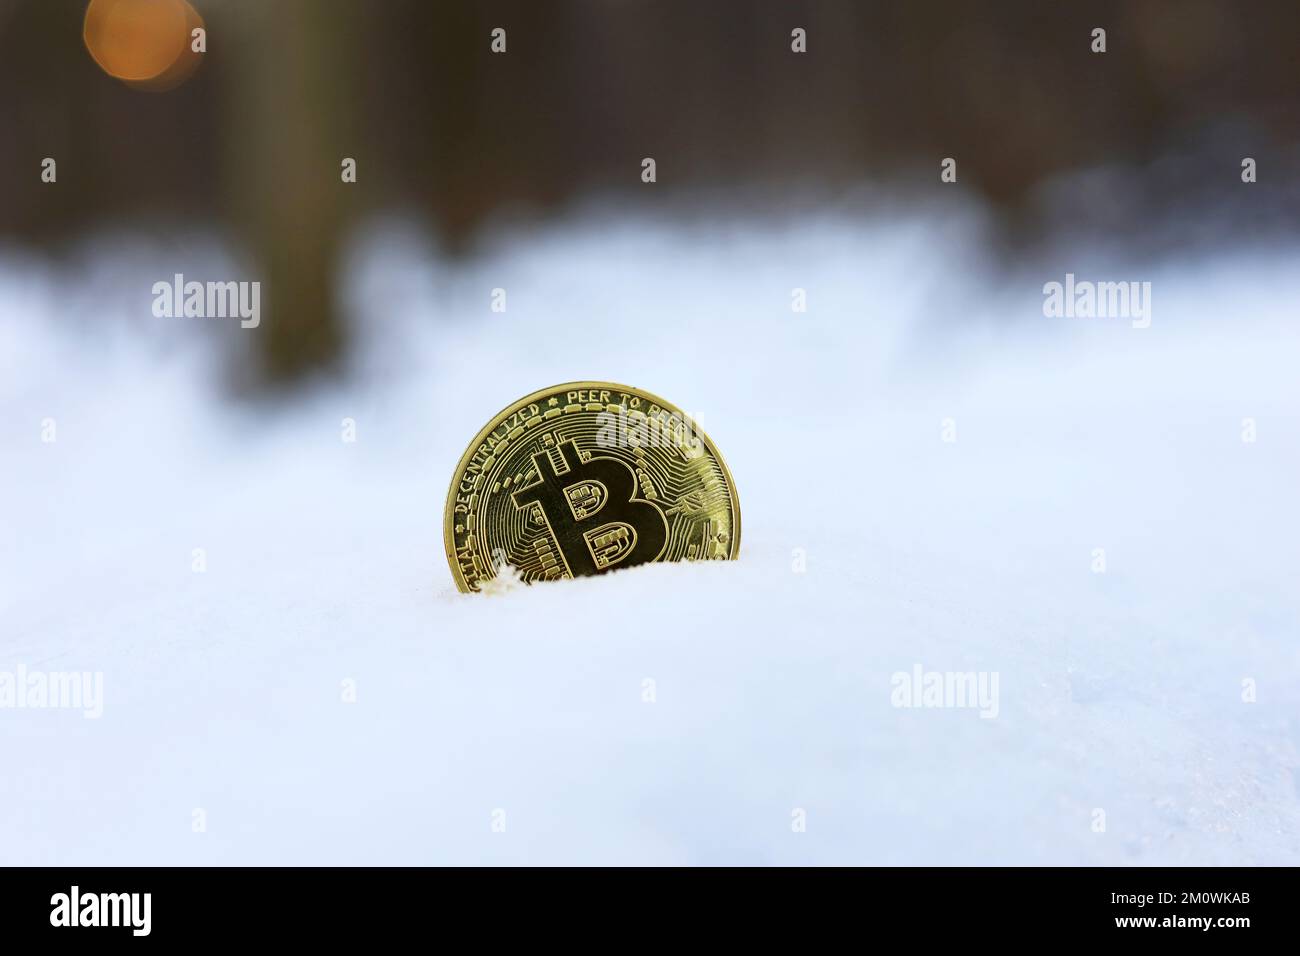 Bitcoin sur la dérive des neiges dans la forêt d'hiver. Monnaie électronique décentralisée, baisse ou gel du taux de crypto-monnaie Banque D'Images